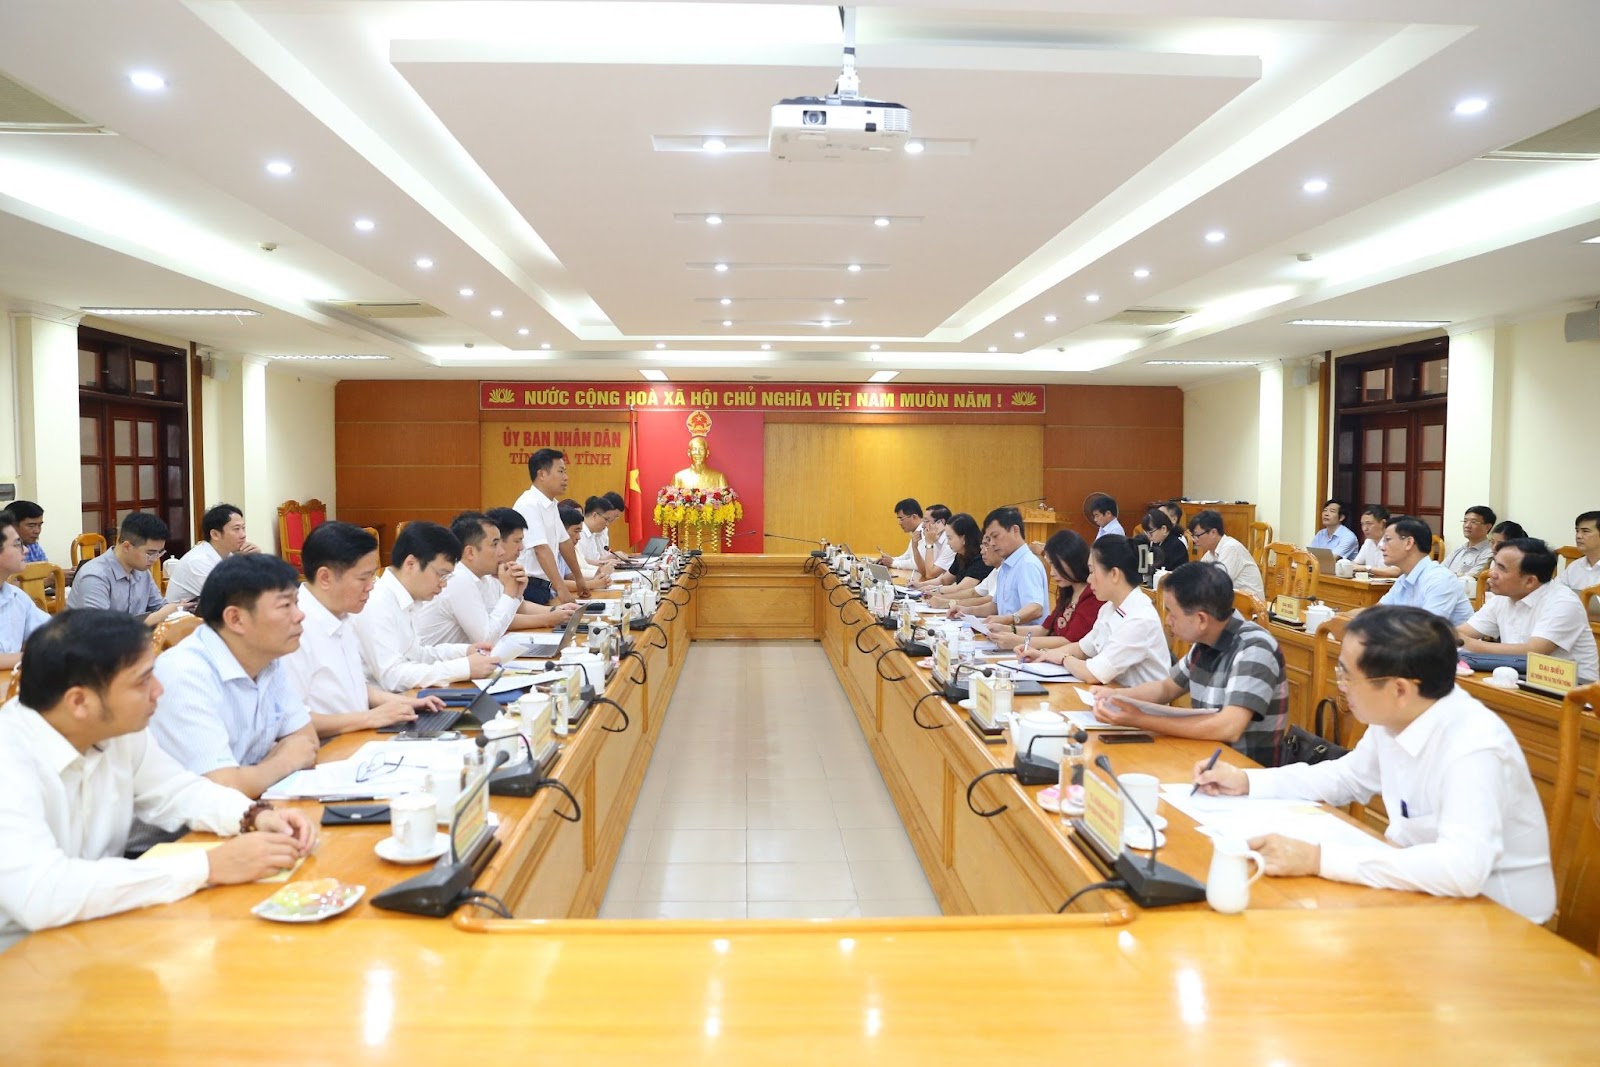 Đại học Quốc gia Hà Nội thống nhất triển khai chương trình đào tạo liên kết tại Trường Đại học Hà Tĩnh